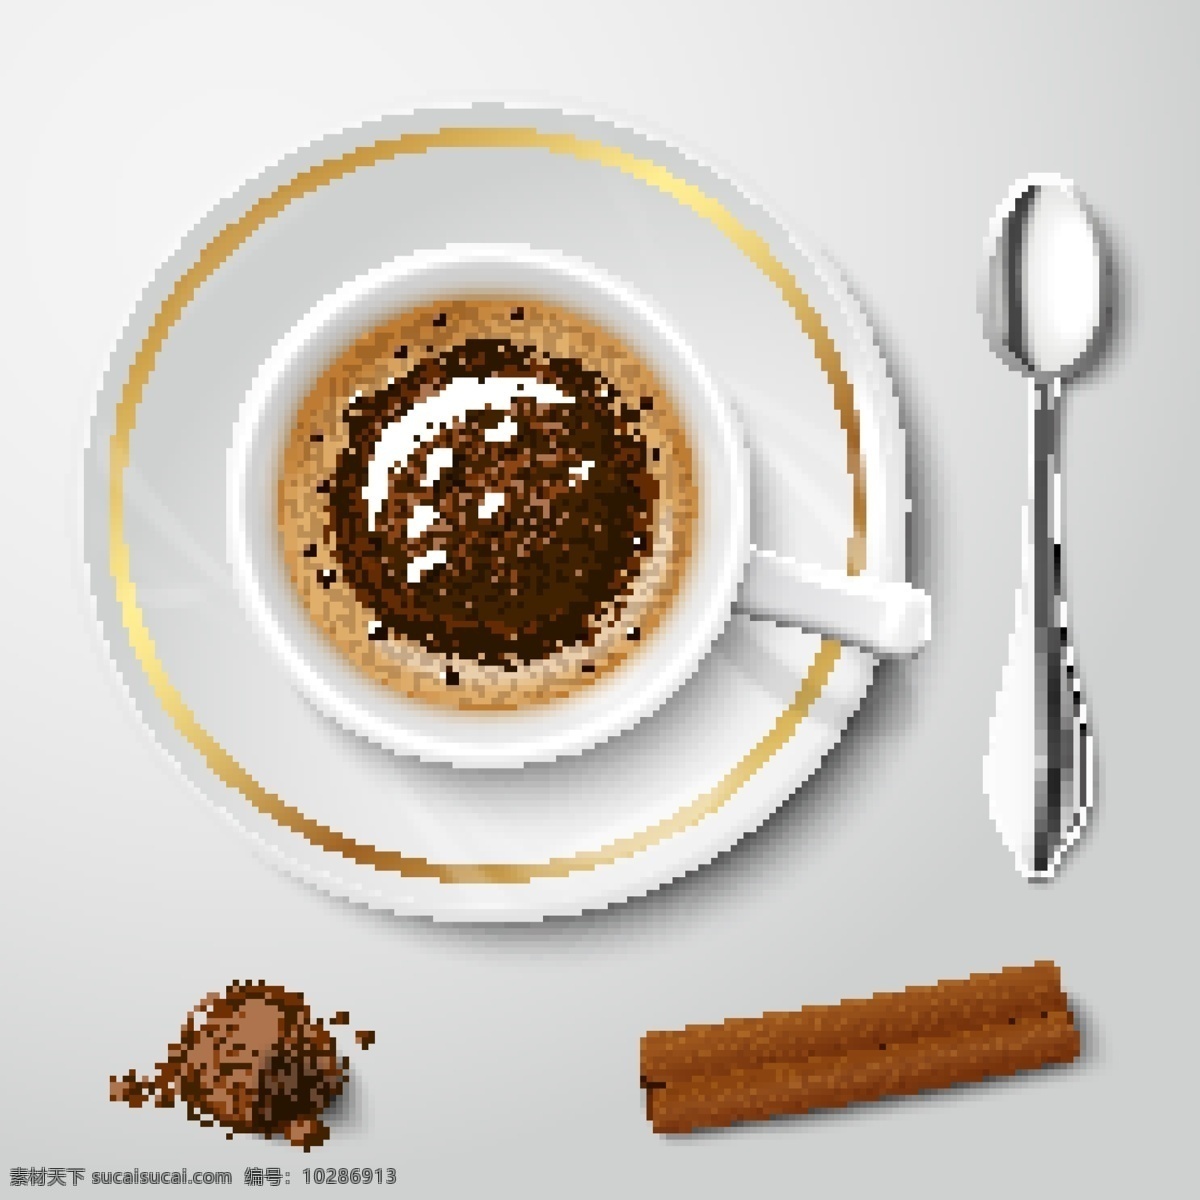 咖啡杯与勺子 咖啡杯 勺子 桂皮 咖啡 饮料 标志图标 矢量素材 白色